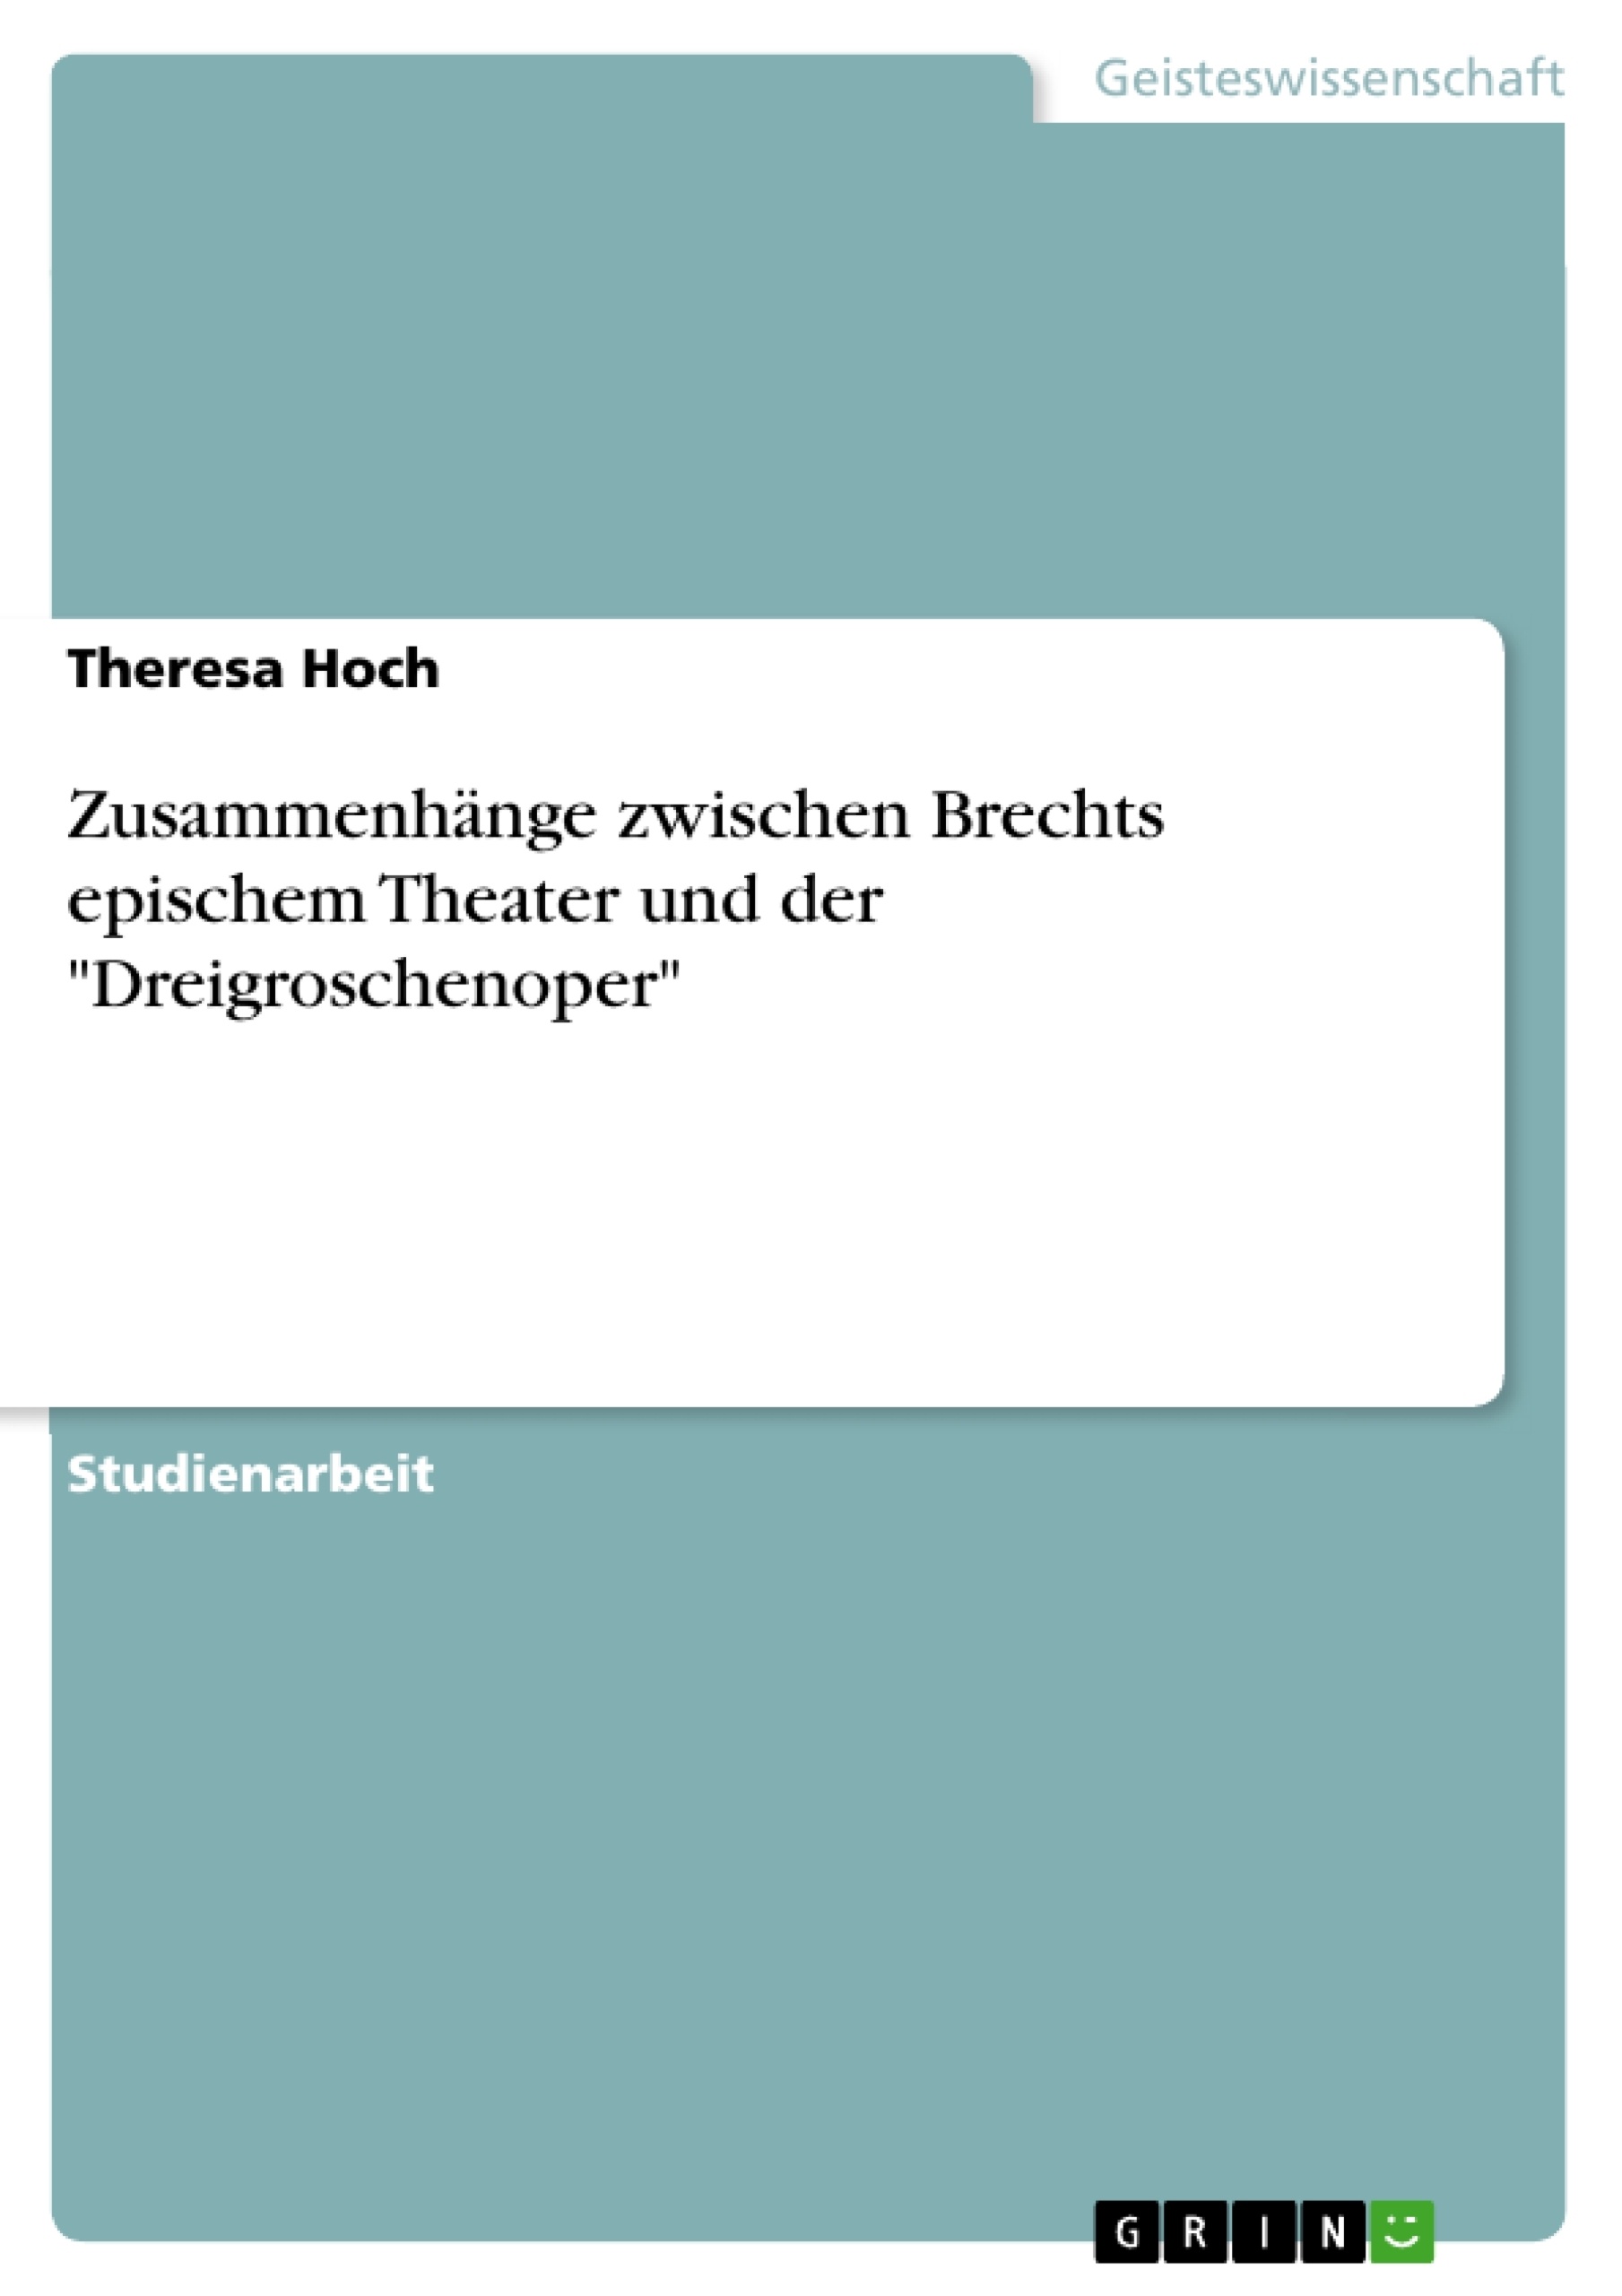 Título: Zusammenhänge zwischen Brechts epischem Theater und der "Dreigroschenoper"